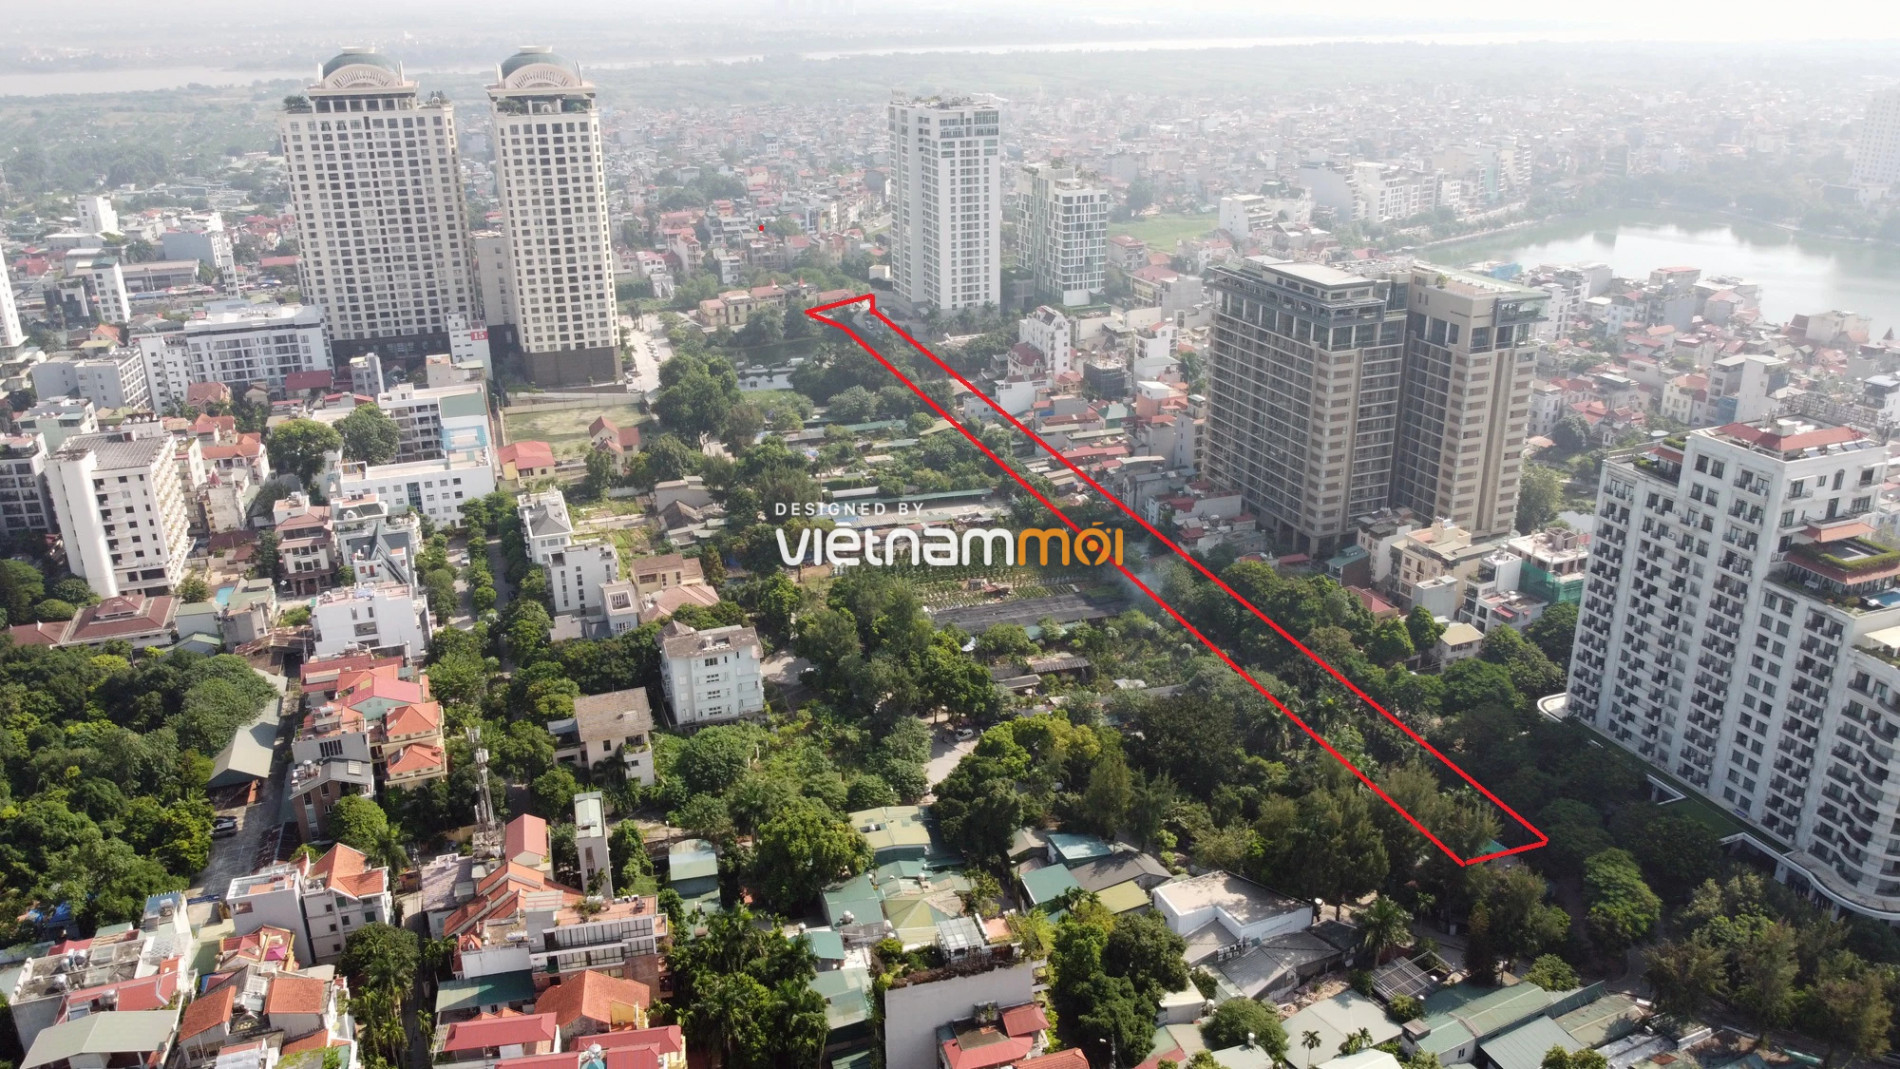 Những khu đất sắp thu hồi để mở đường ở quận Tây Hồ, Hà Nội (phần 6) - Ảnh 7.